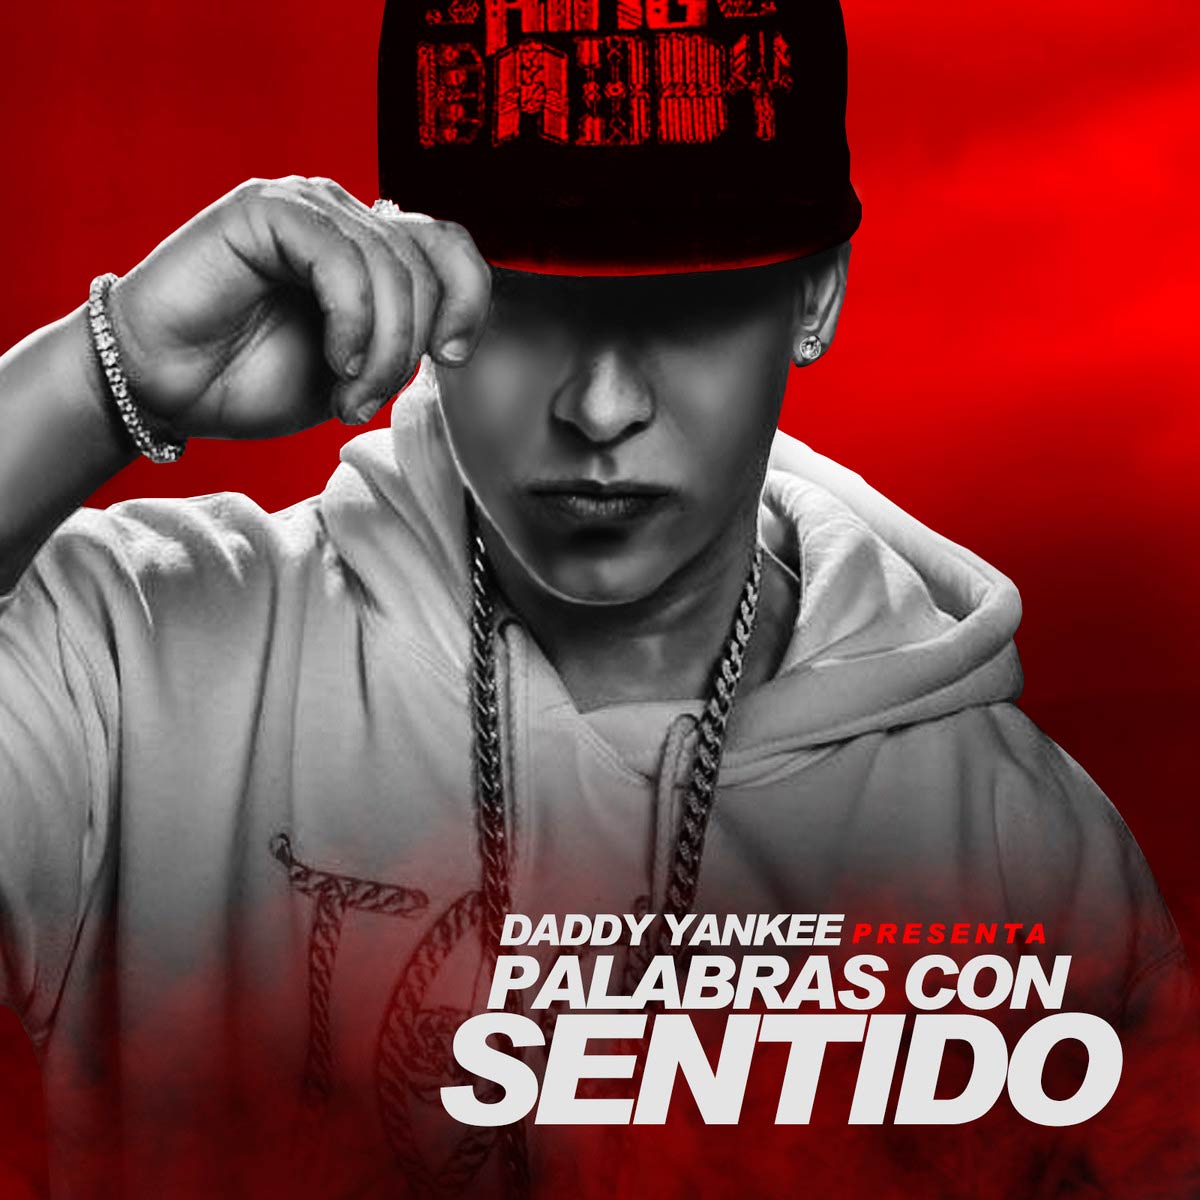 Daddy Yankee: Palabras con sentido, la portada de la canción